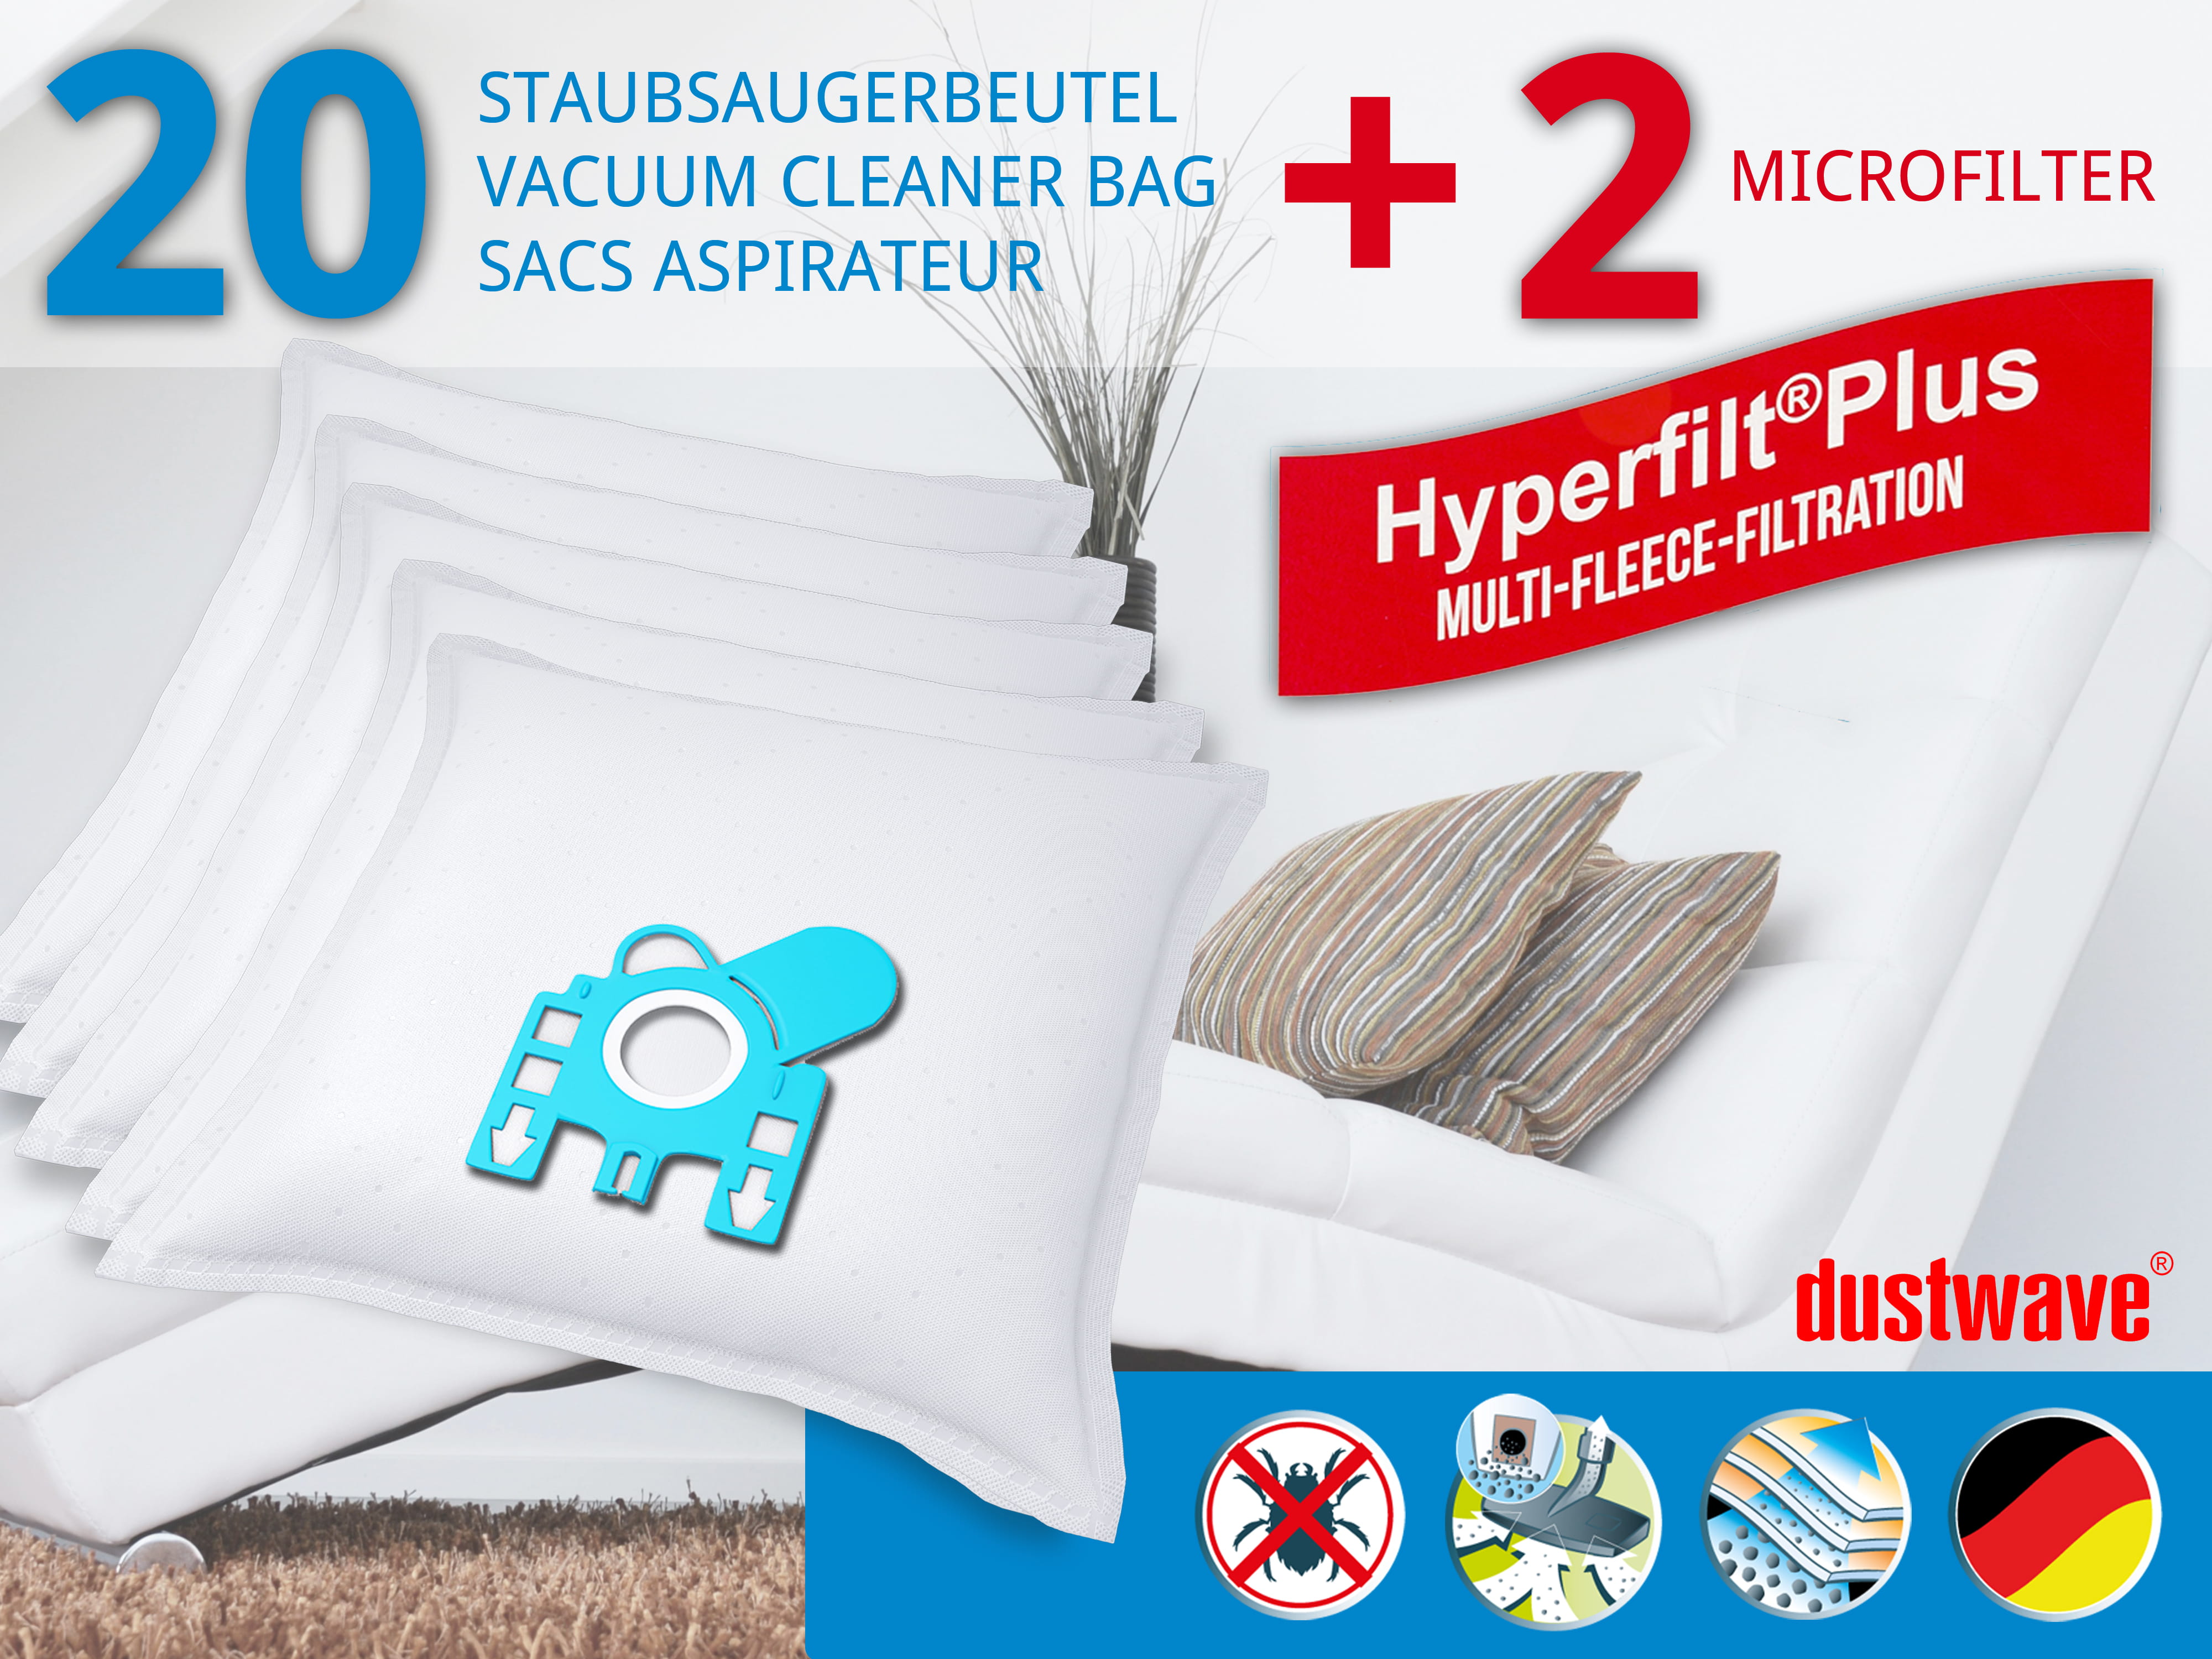 Dustwave® 20 Staubsaugerbeutel für Hoover TE70_TE00011 - hocheffizient, mehrlagiges Mikrovlies mit Hygieneverschluss - Made in Germany